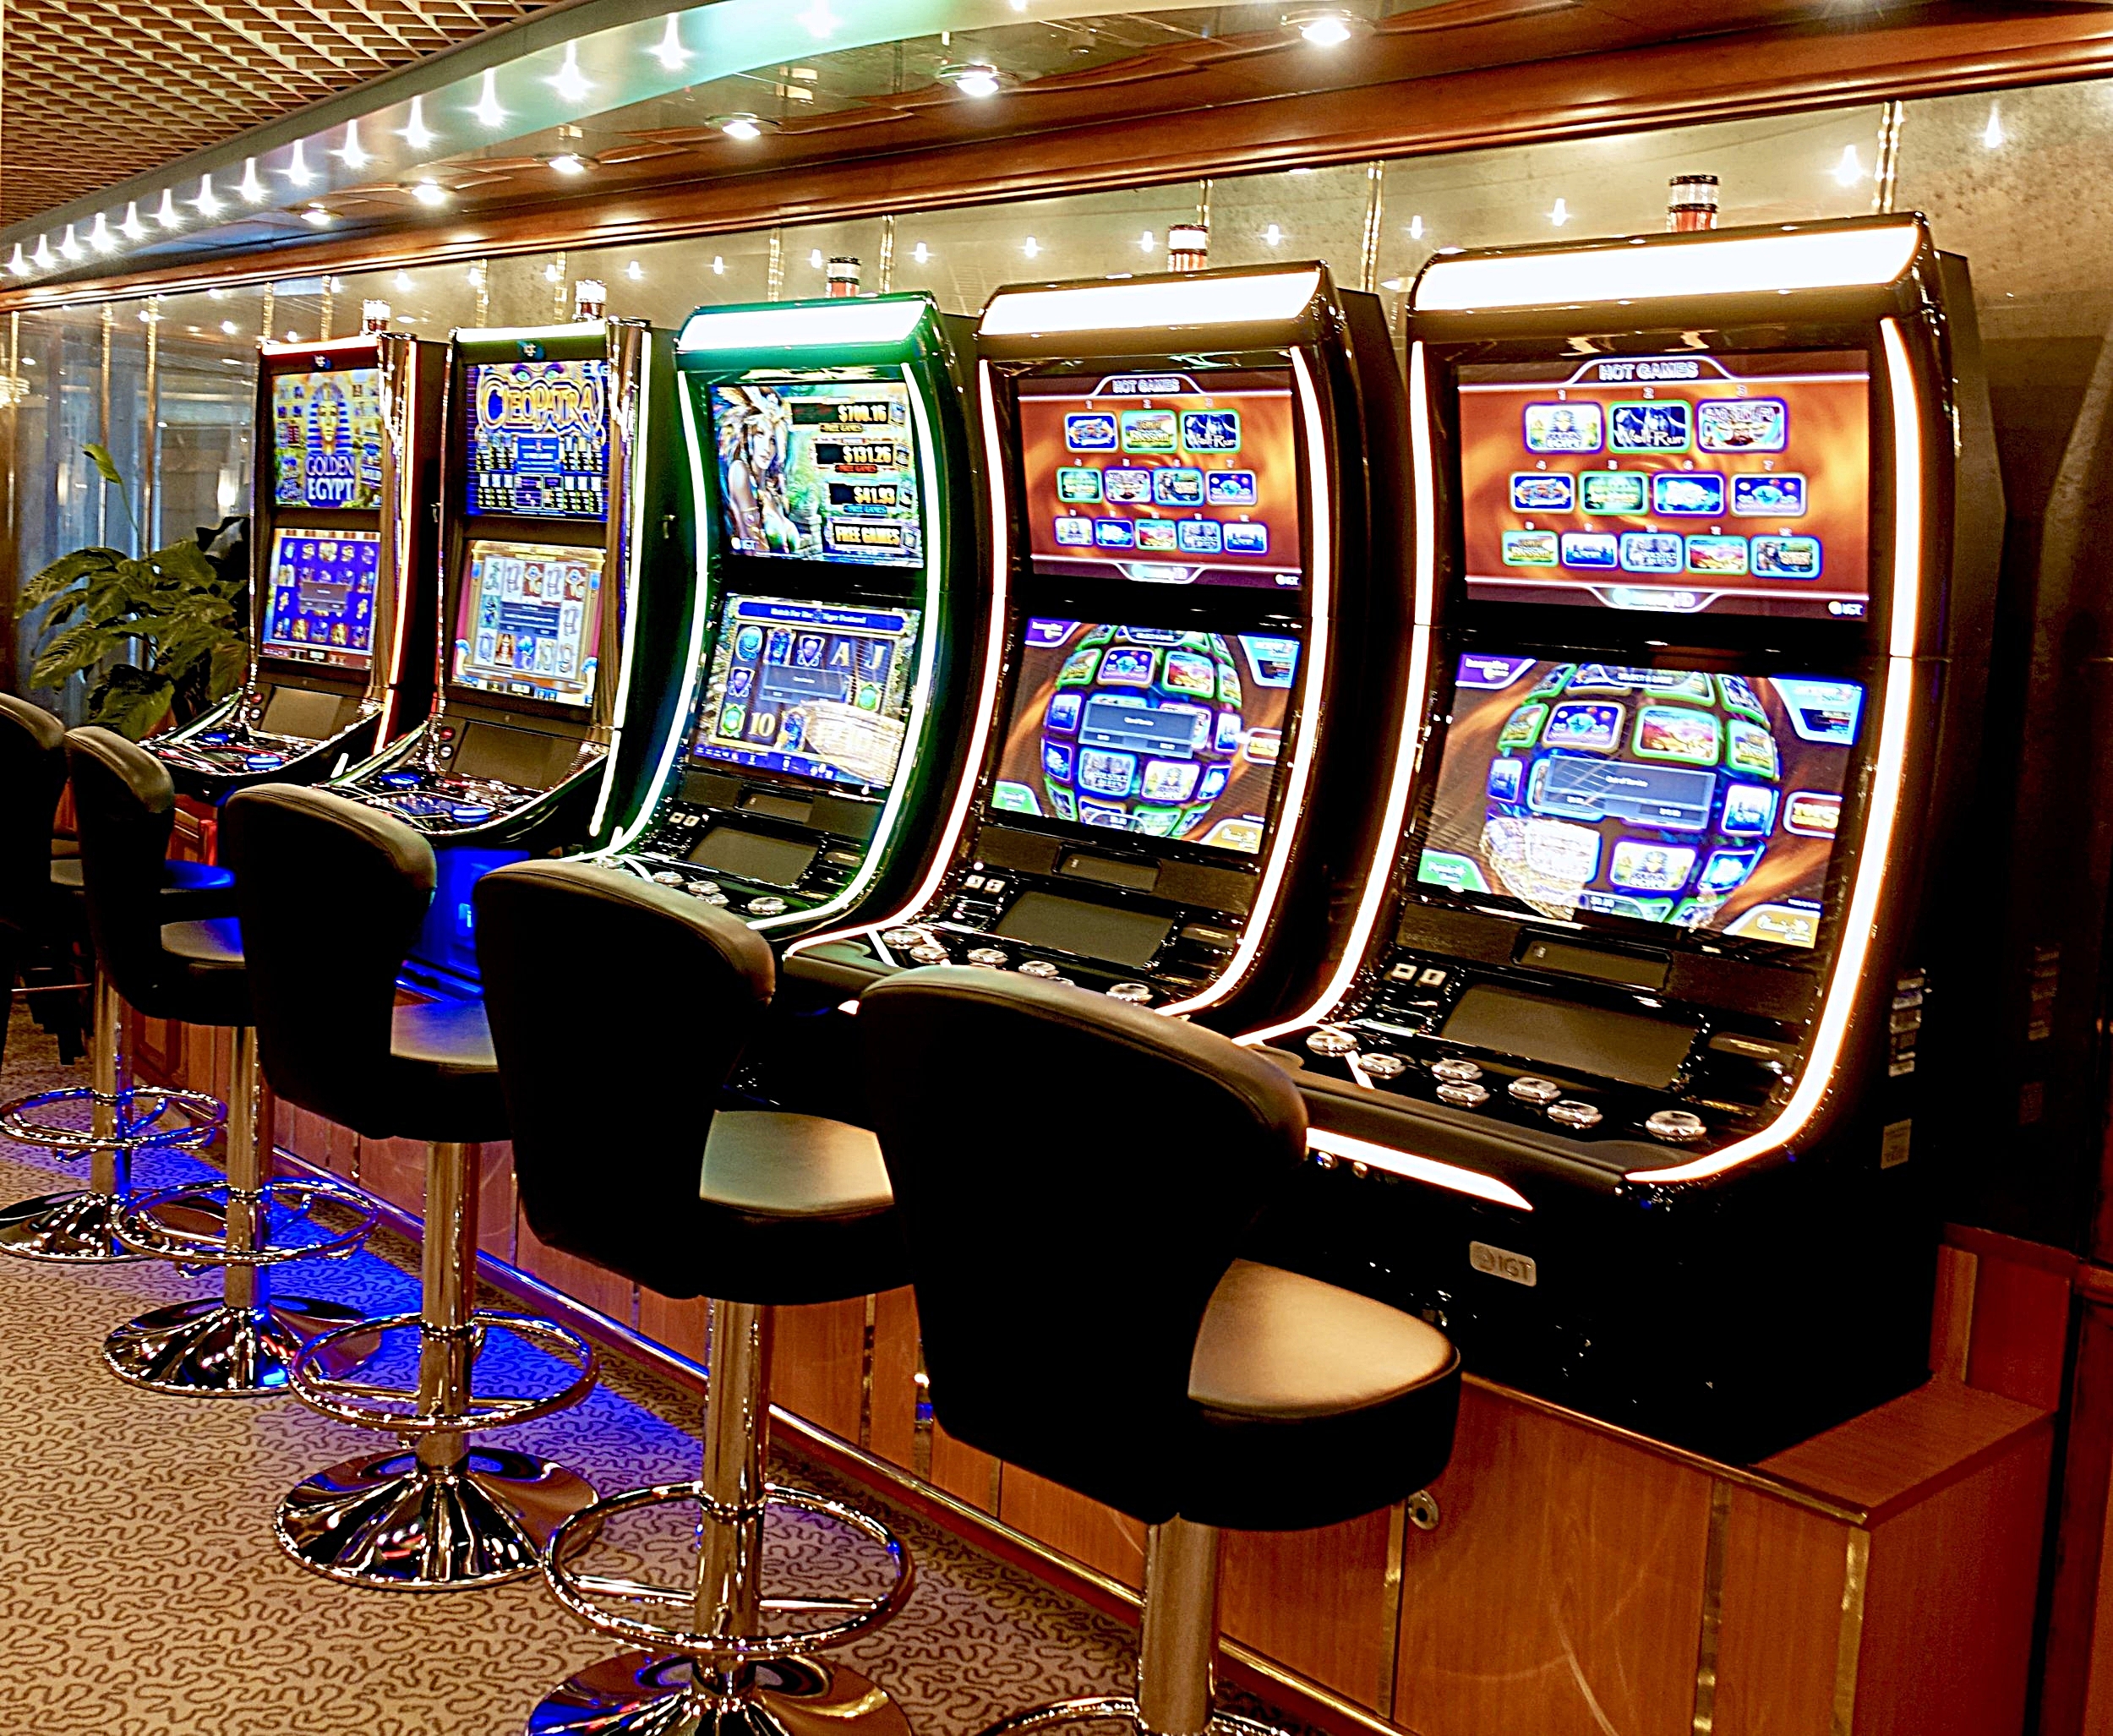  The casino slot machines. 